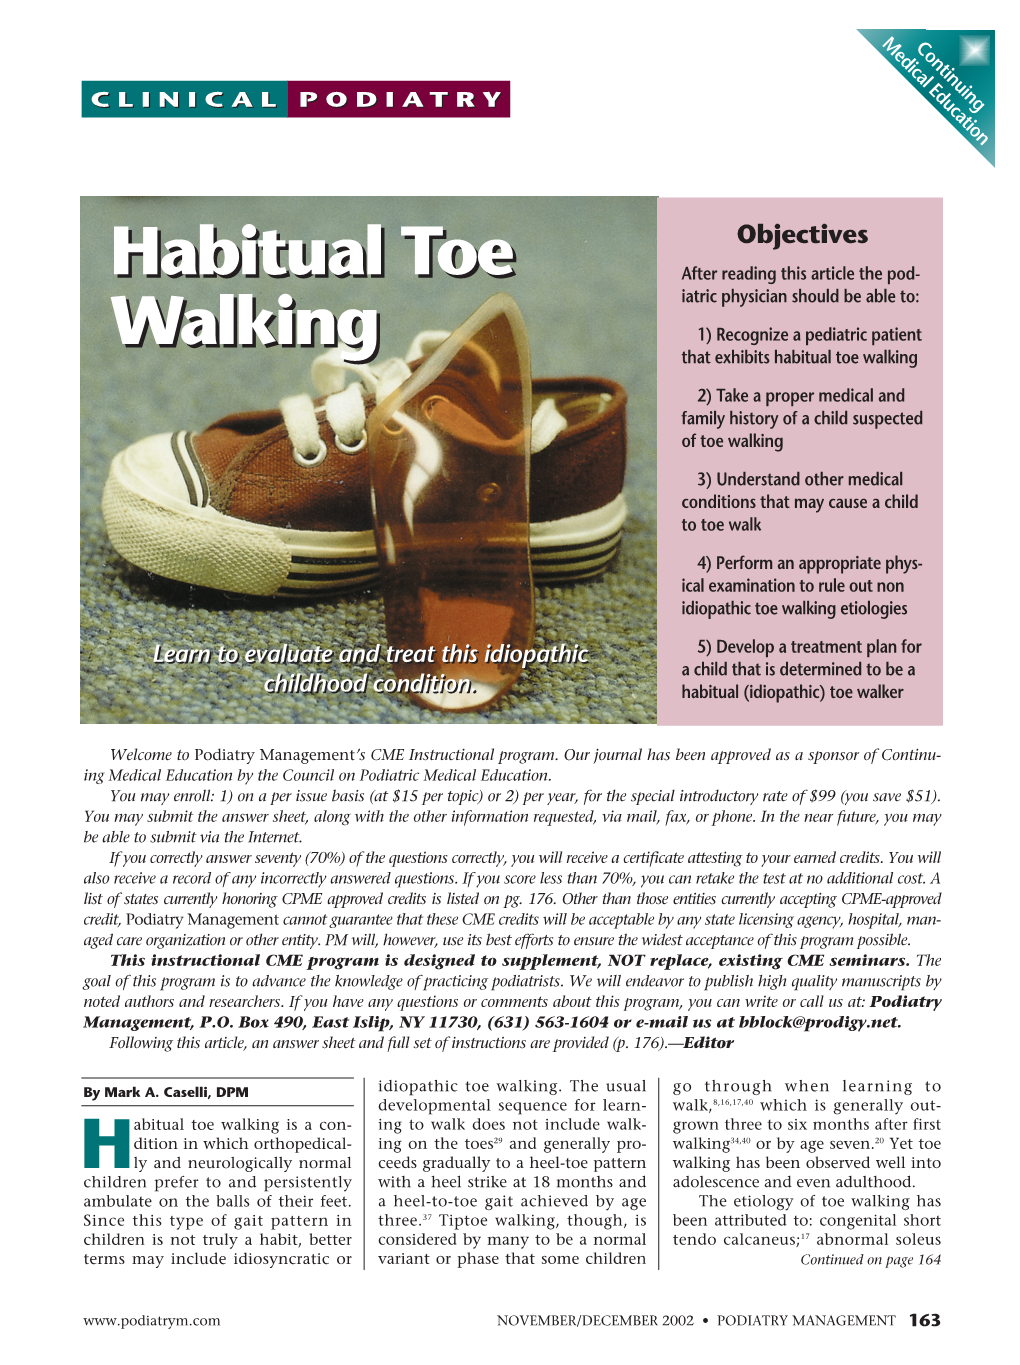 Habitual Toe Walking